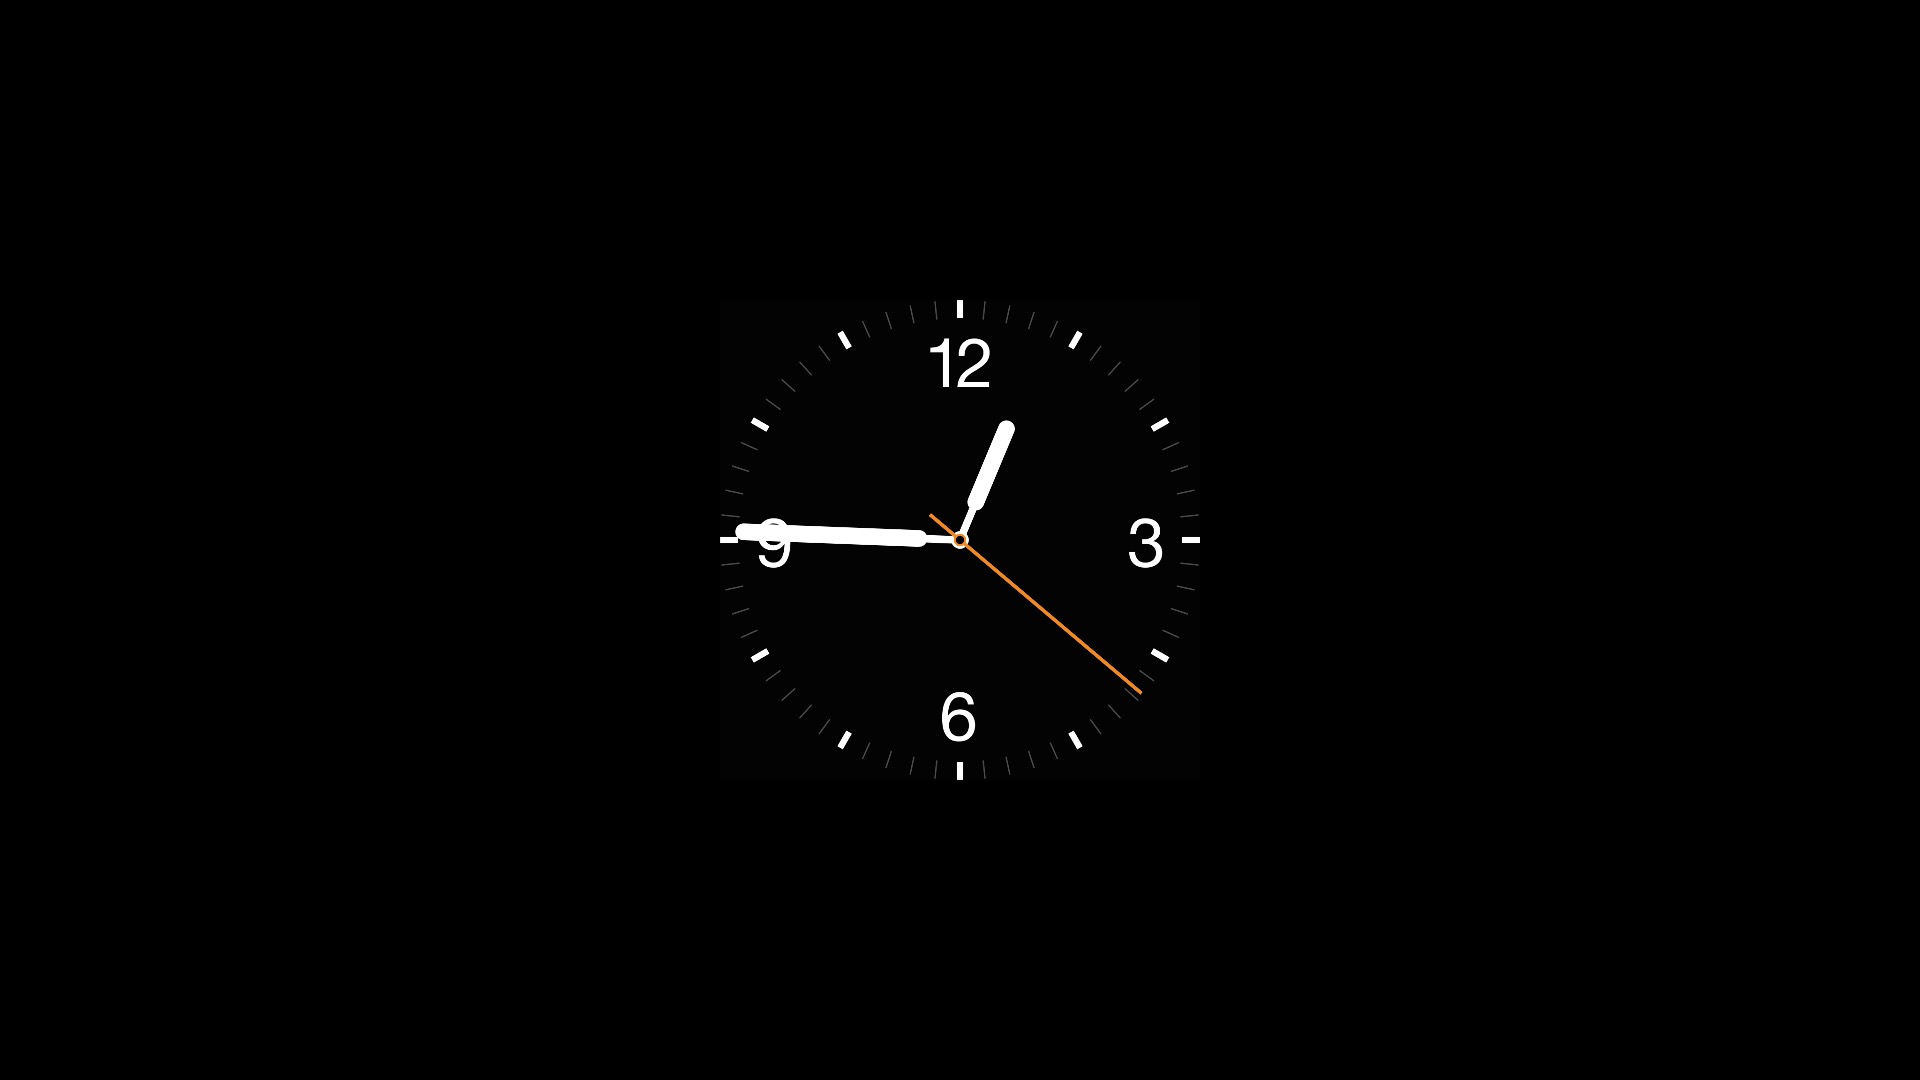 Обои для виджетов. Часы на черном фоне. Заставка на часы. Стильные часы на заставку. Обои на рабочий стол часы.